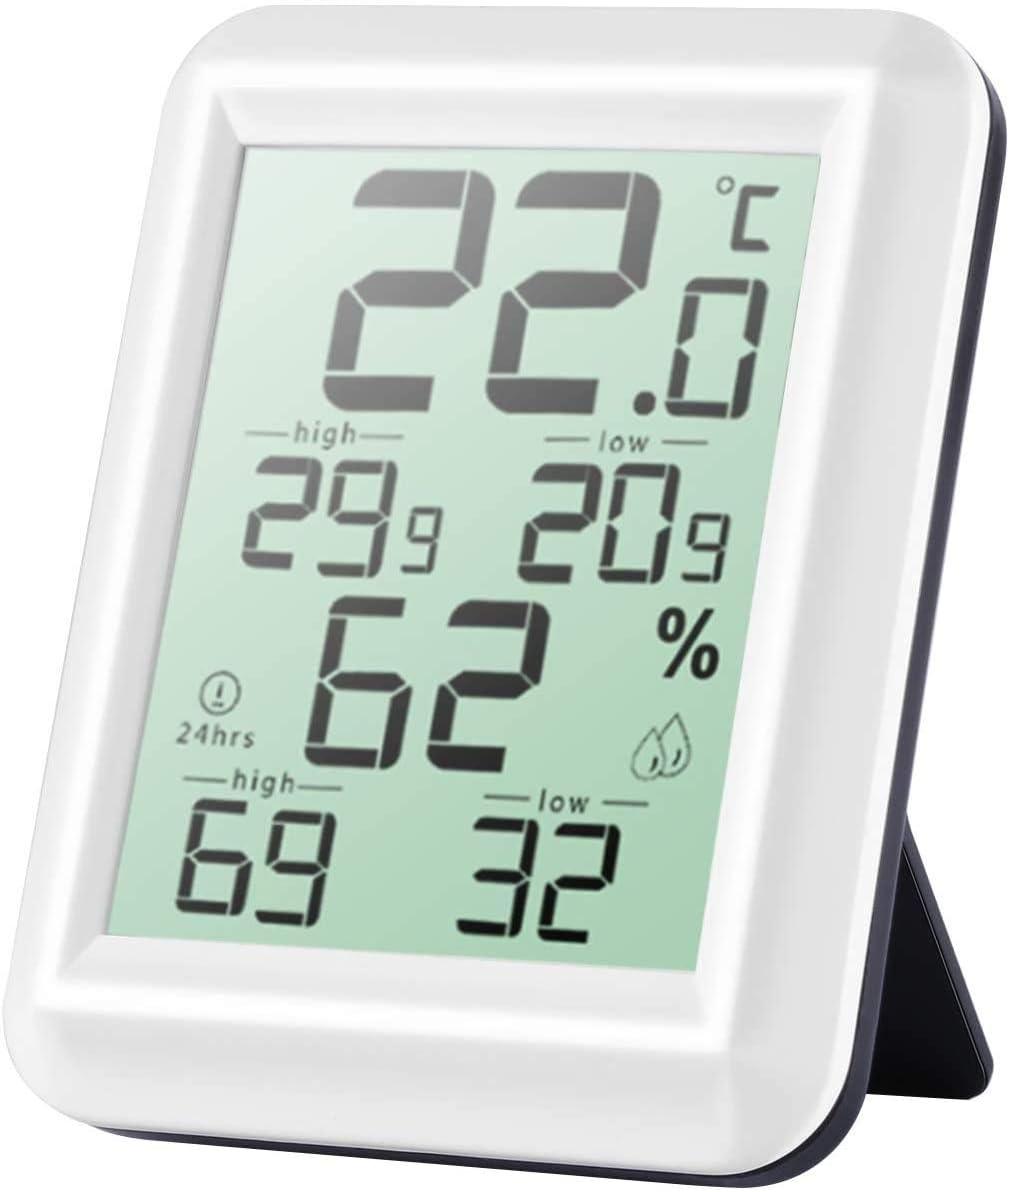 Nhiệt kế kế nội thất nội thất kỹ thuật số cao, ℃/chuyển đổi, hygrometer nhiệt để phát hiện độ ẩm và nhiệt độ, dấu hiệu của mức độ thoải mái của nhà bếp tại nhà